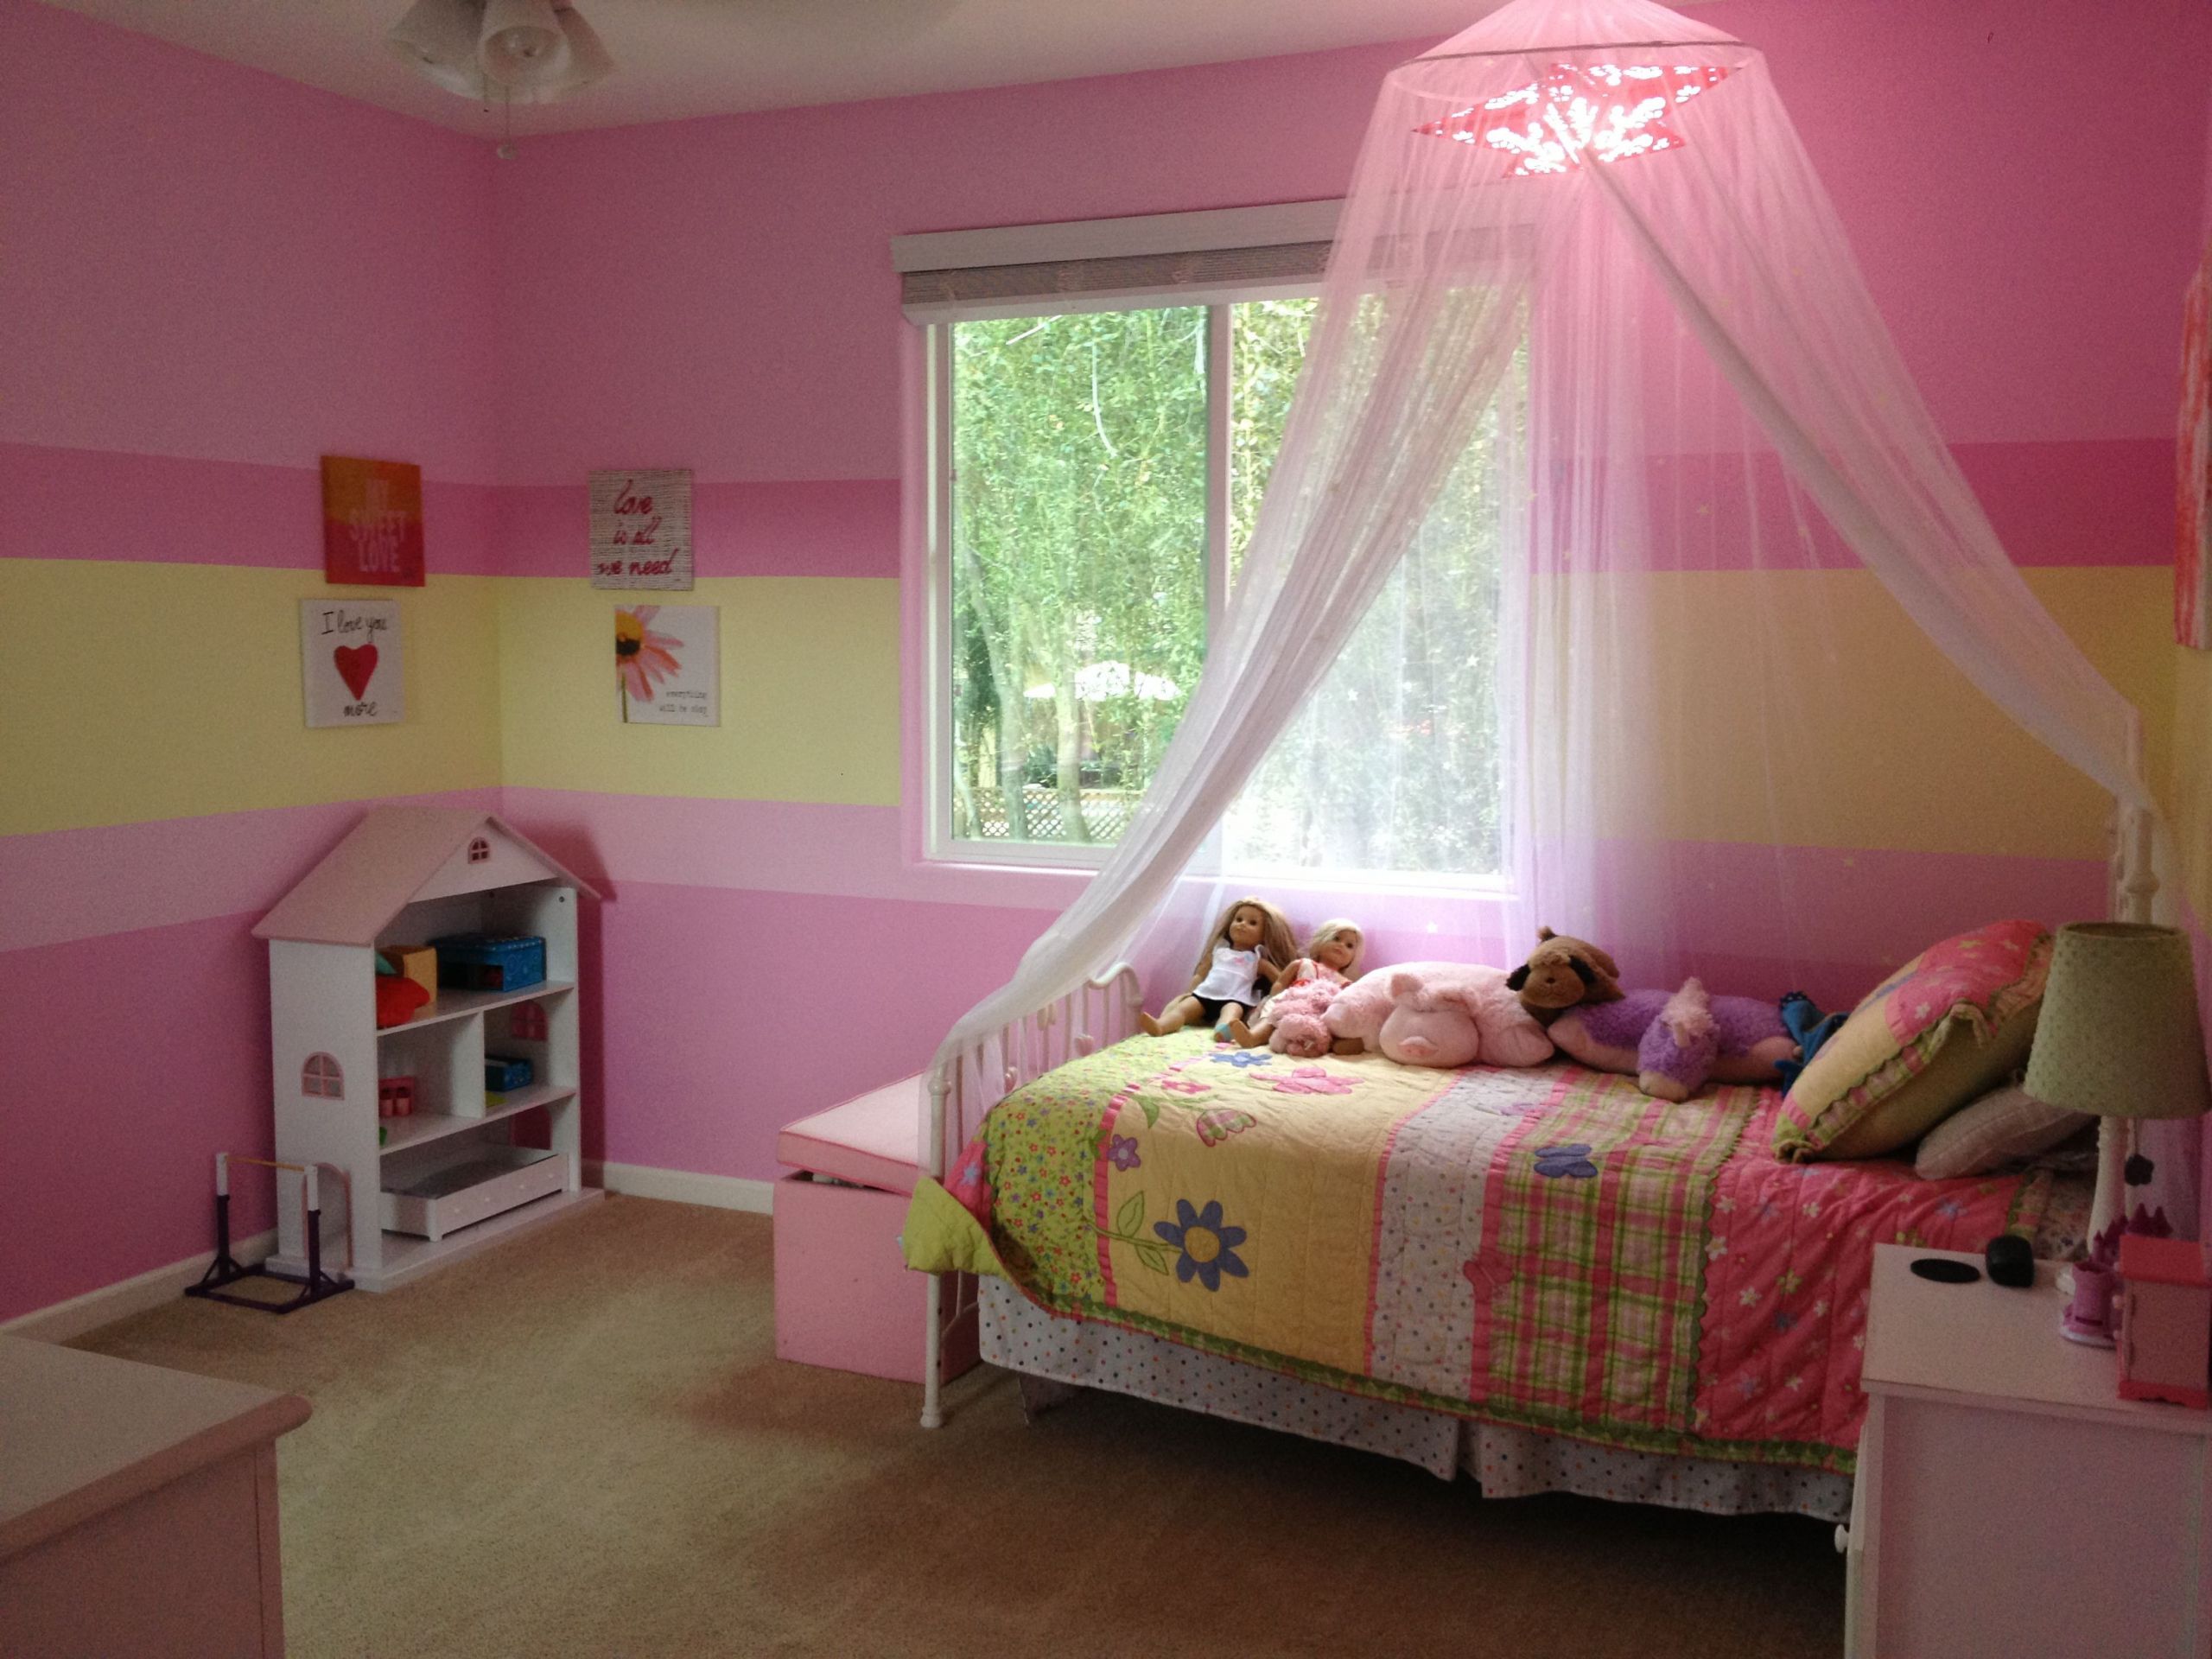 Paint Ideas For Girl Bedroom
 Best 25 Girl bedroom paint ideas on Pinterest